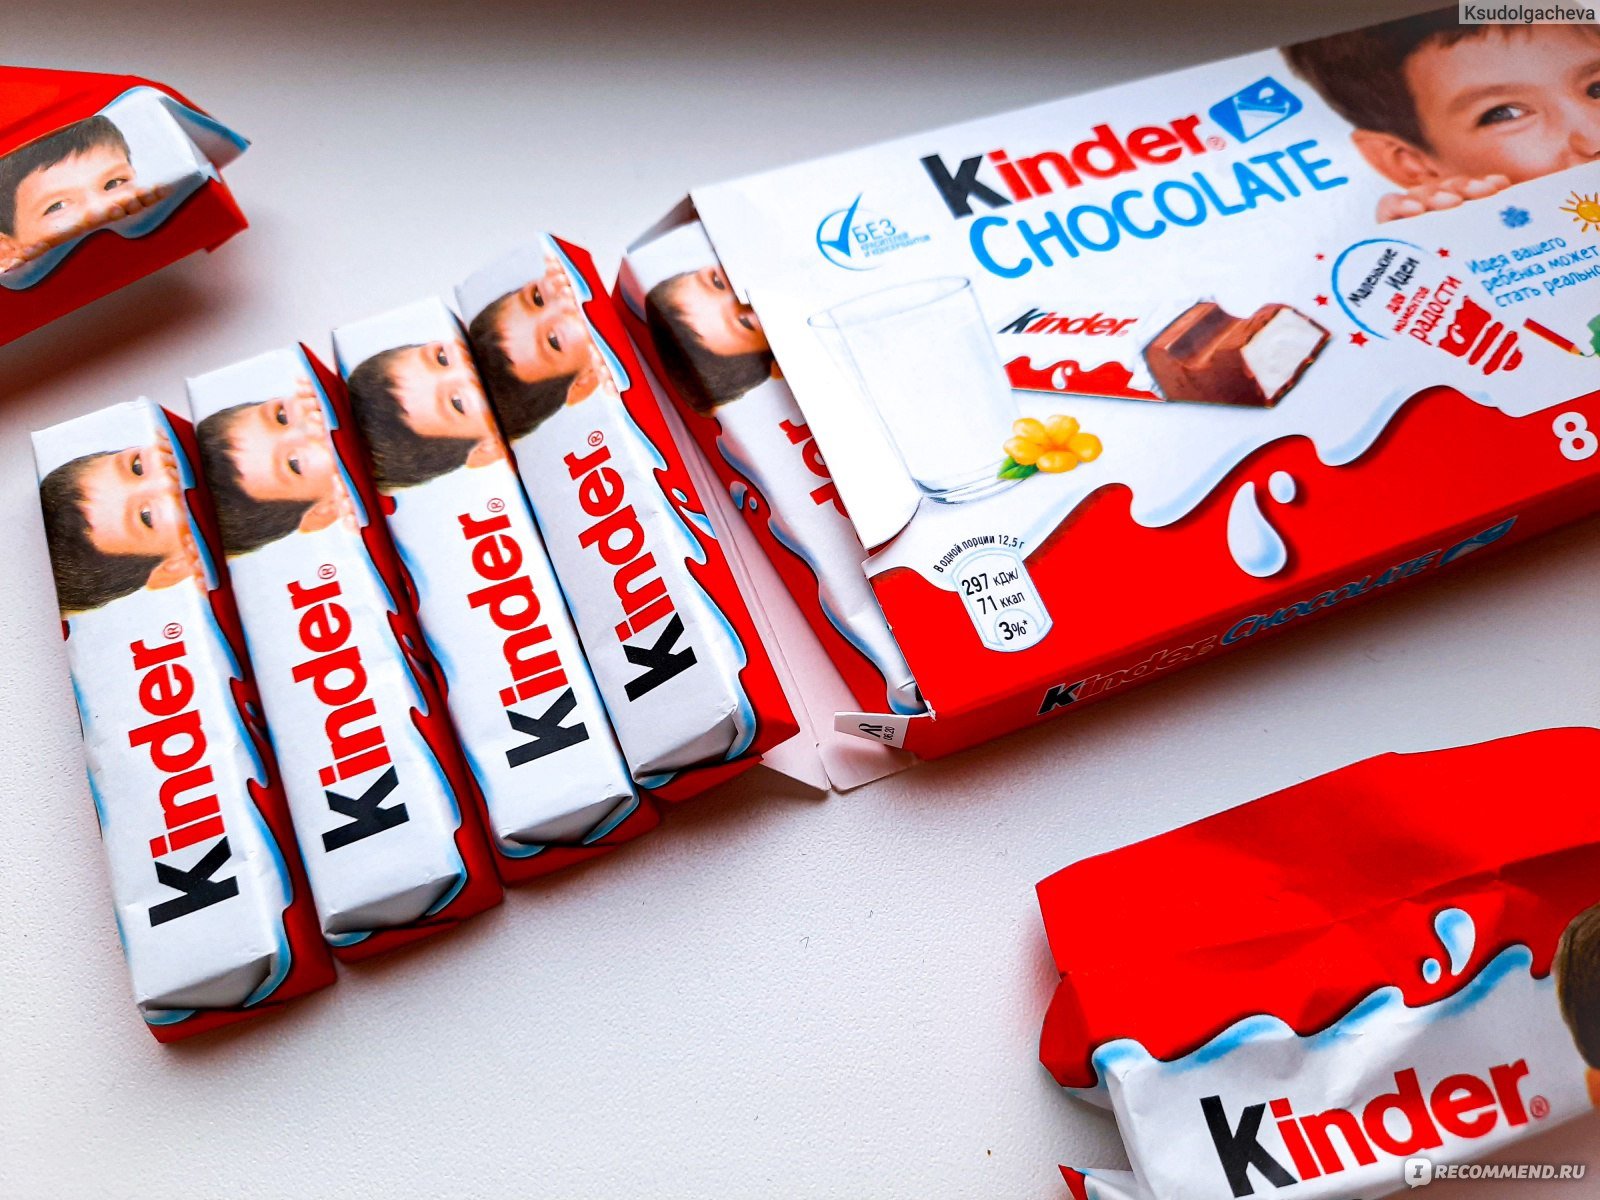 Сколько шоколада в киндере. Шоколадка Киндер. Kinder шоколадки. Kinder Chocolate упаковка. Упаковка шоколадок Киндер.